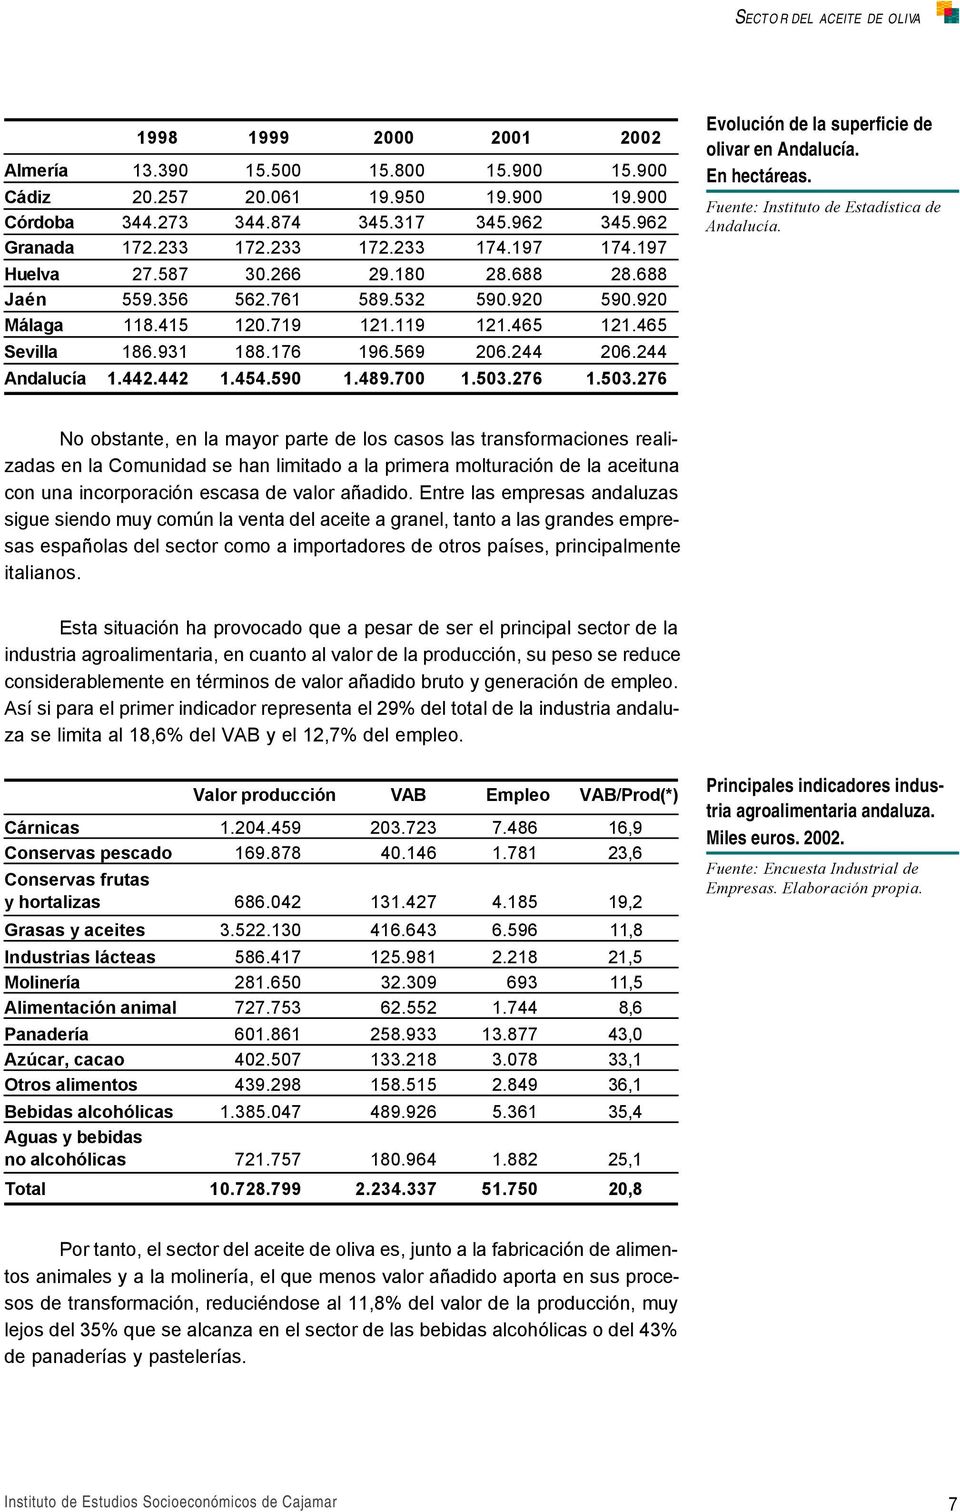 244 Andalucía 1.442.442 1.454.590 1.489.700 1.503.276 1.503.276 Evolución de la superficie de olivar en Andalucía. En hectáreas. Fuente: Instituto de Estadística de Andalucía.